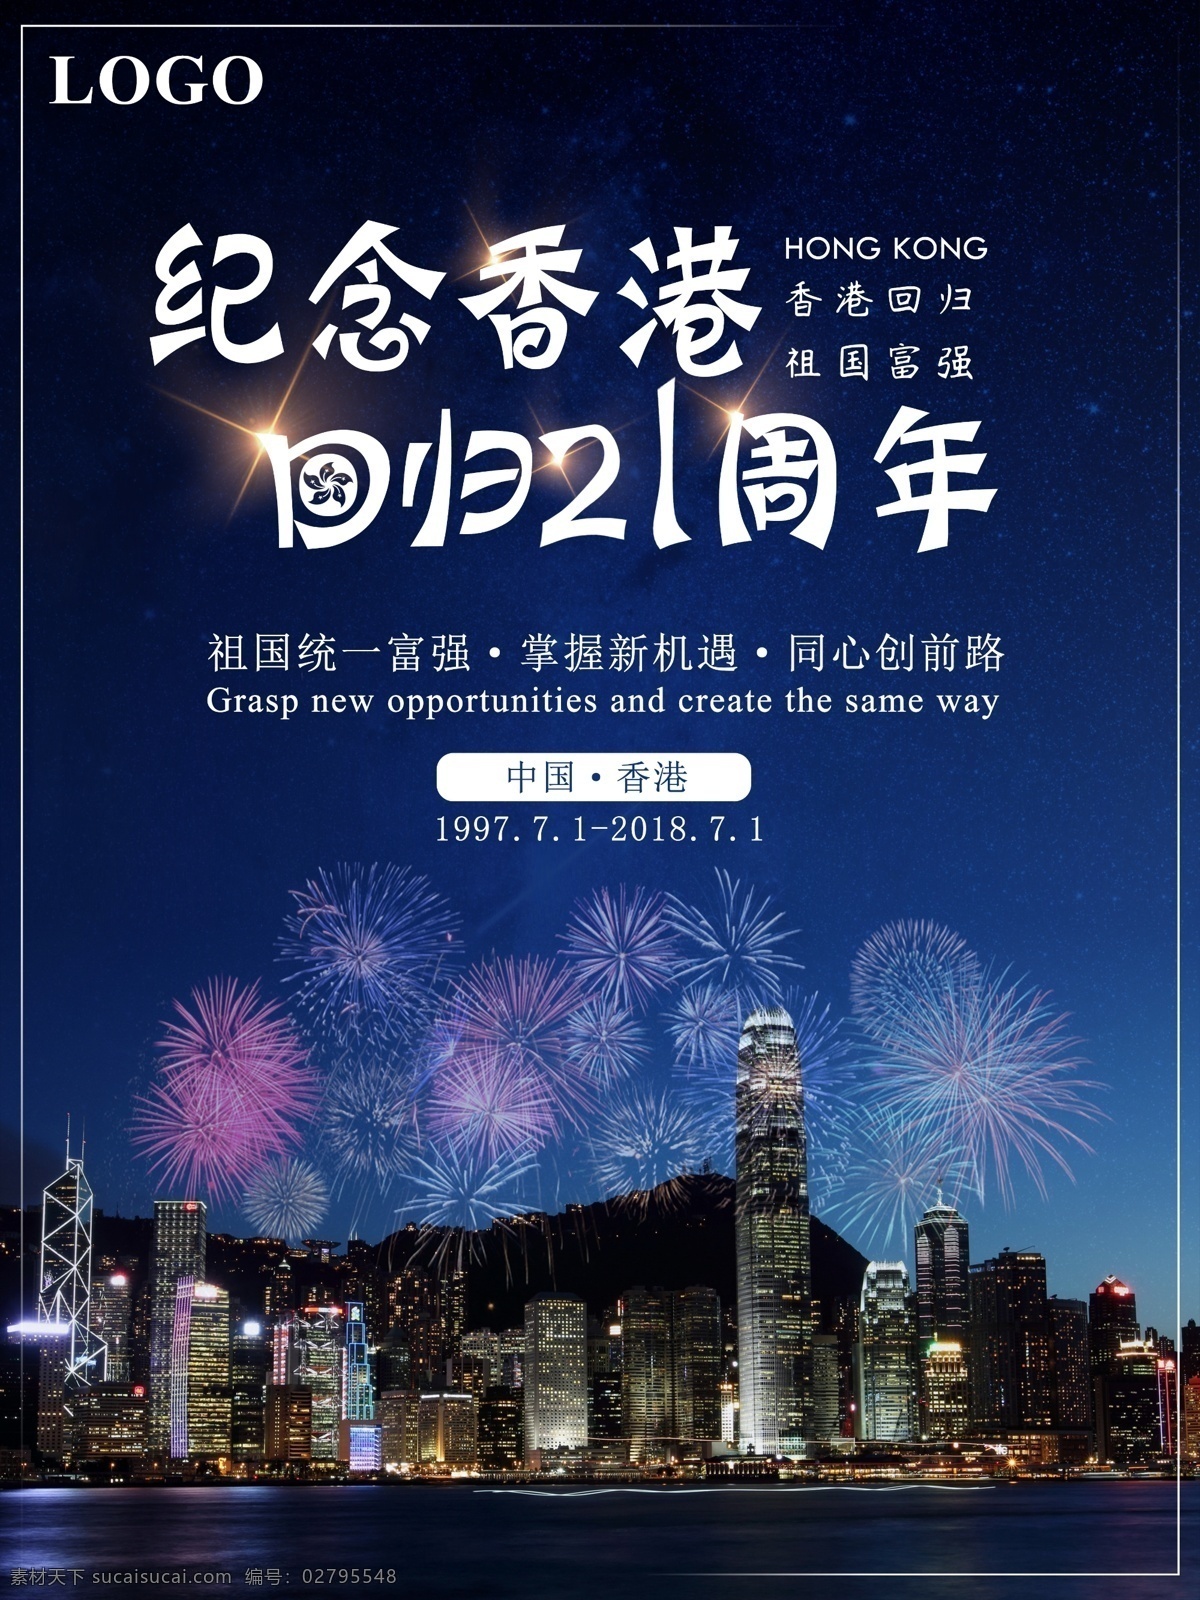 简单 香港 回归 日 周年 回归日 21周年 同心创前路 掌握新机遇